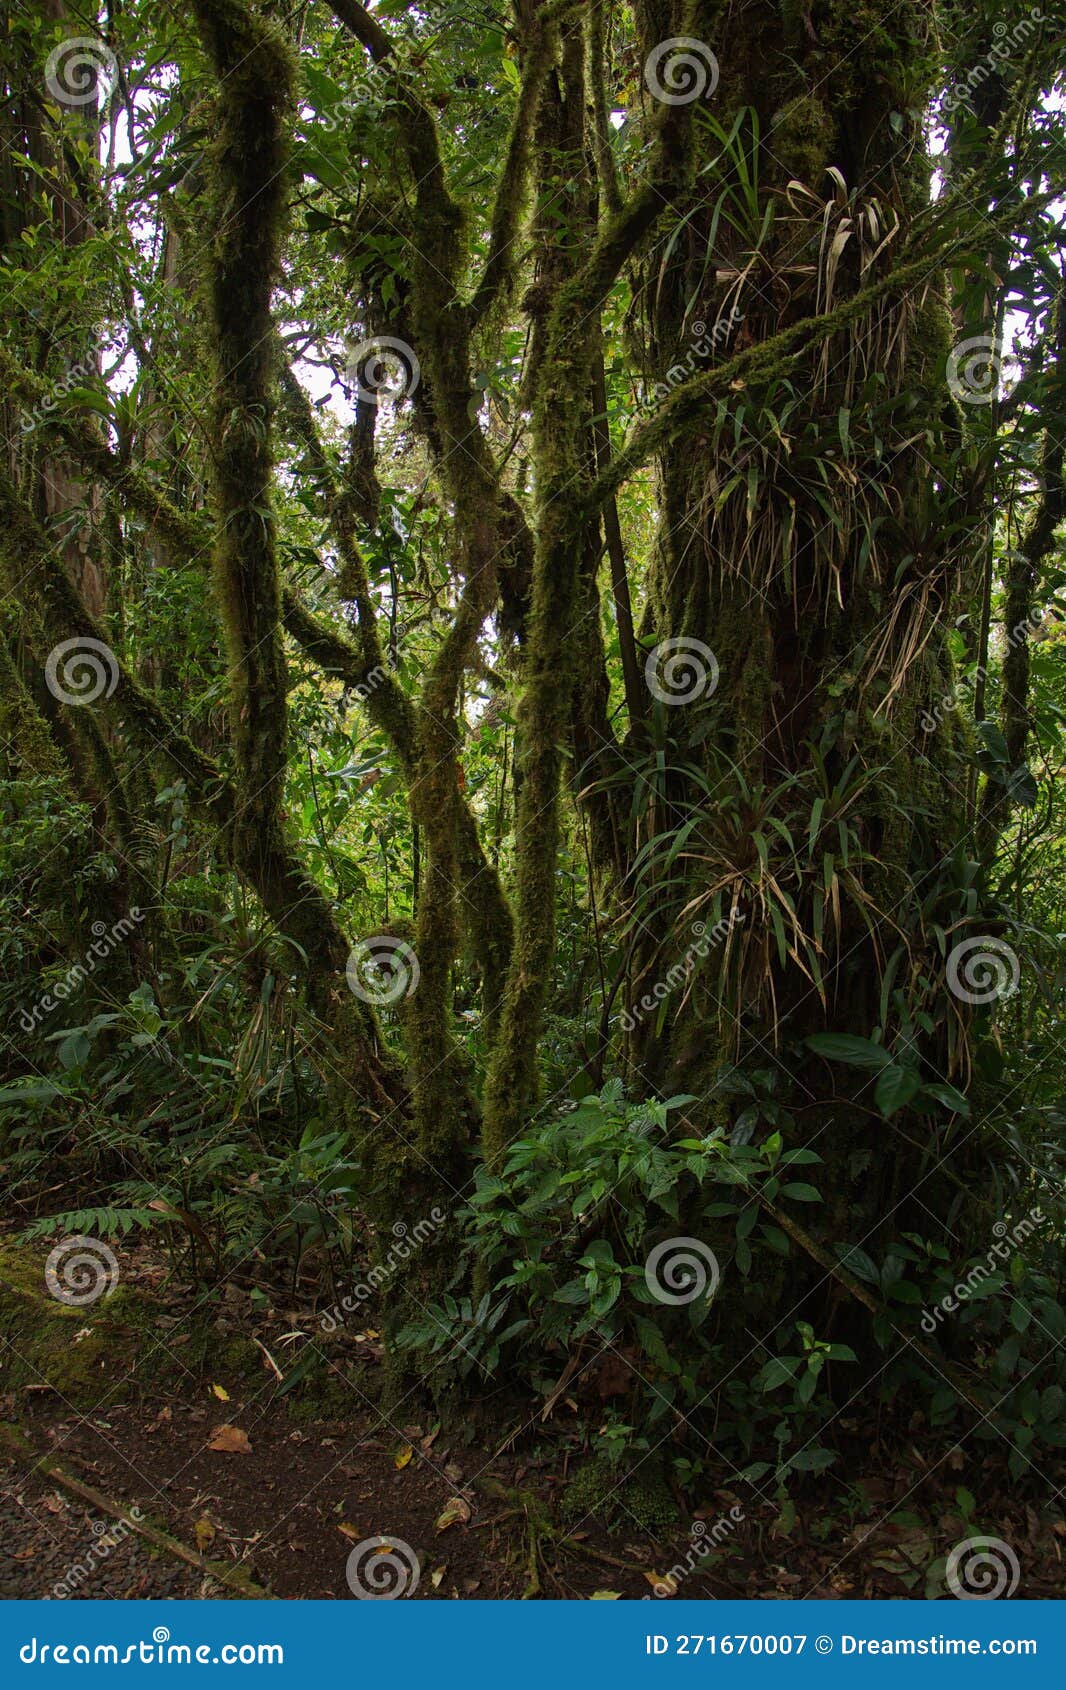 trees in bosque nuboso national park near santa elena in costa rica